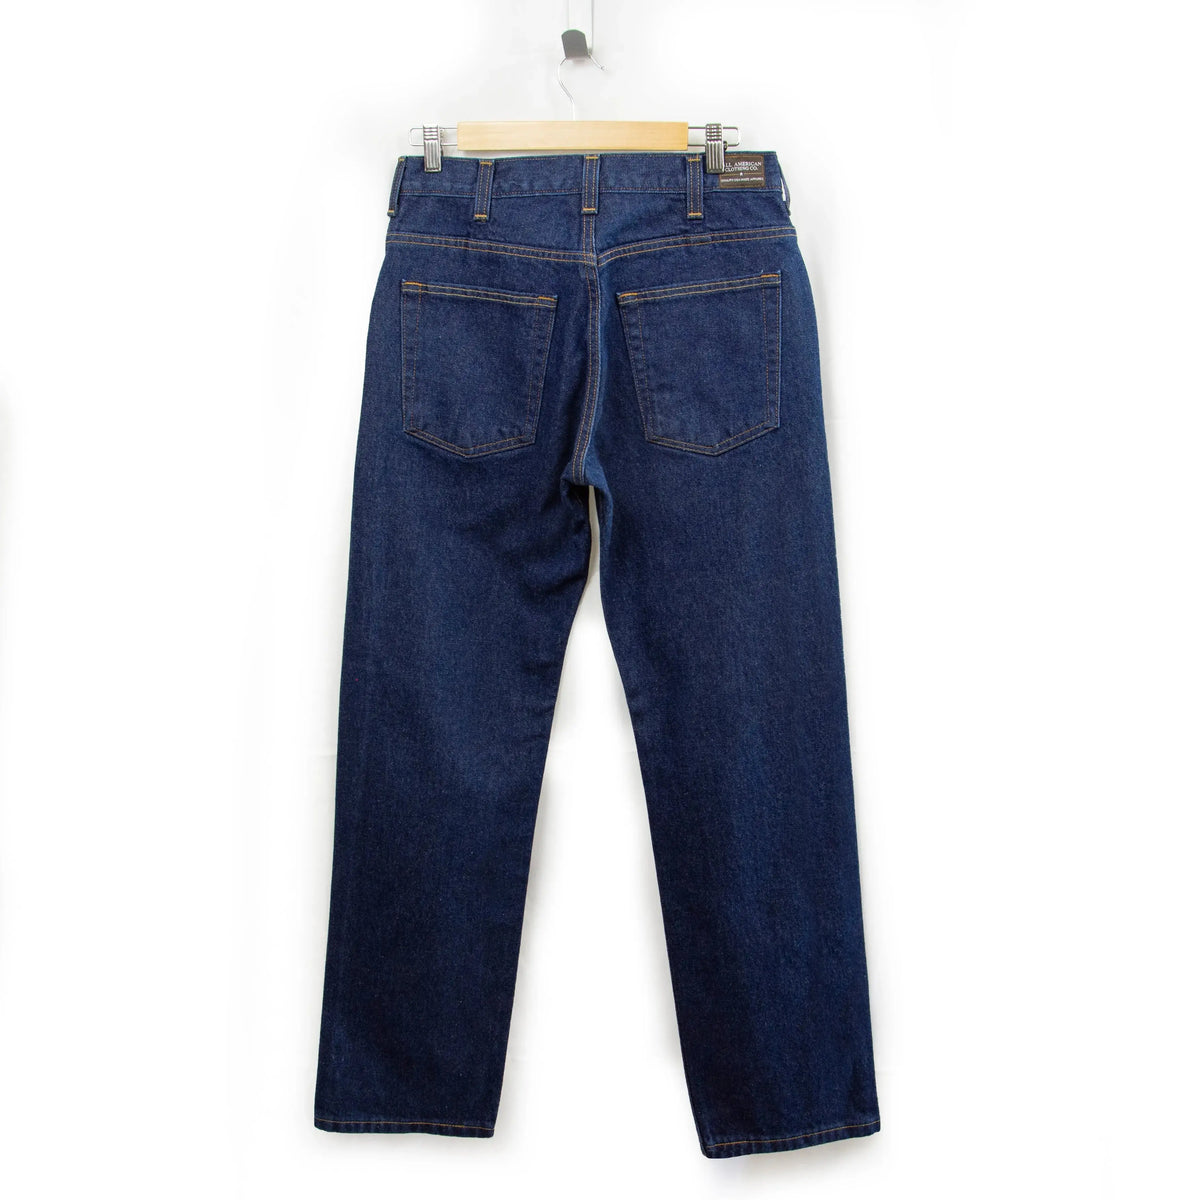 American European Womens Jeans | European American Jeans Pants | Size 22  Womens Jeans - Jeans - Aliexpress